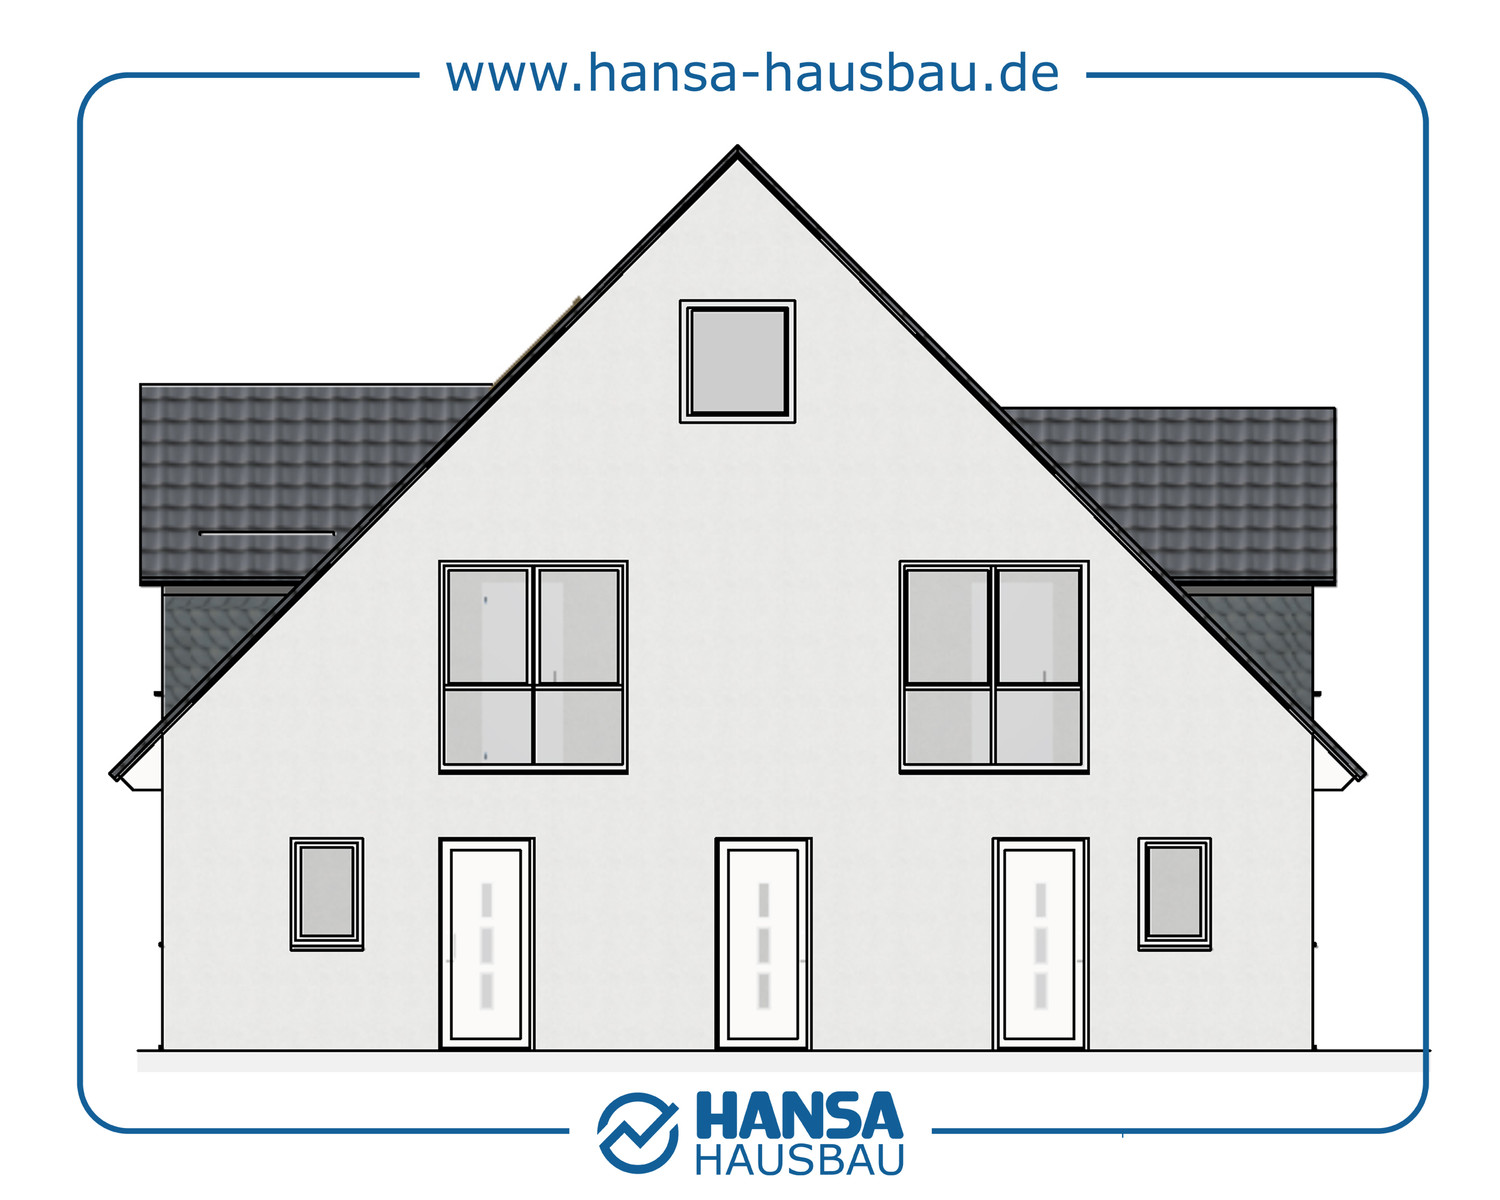 Hansa Hausbau Bauplanung Architektenhaus Neubau